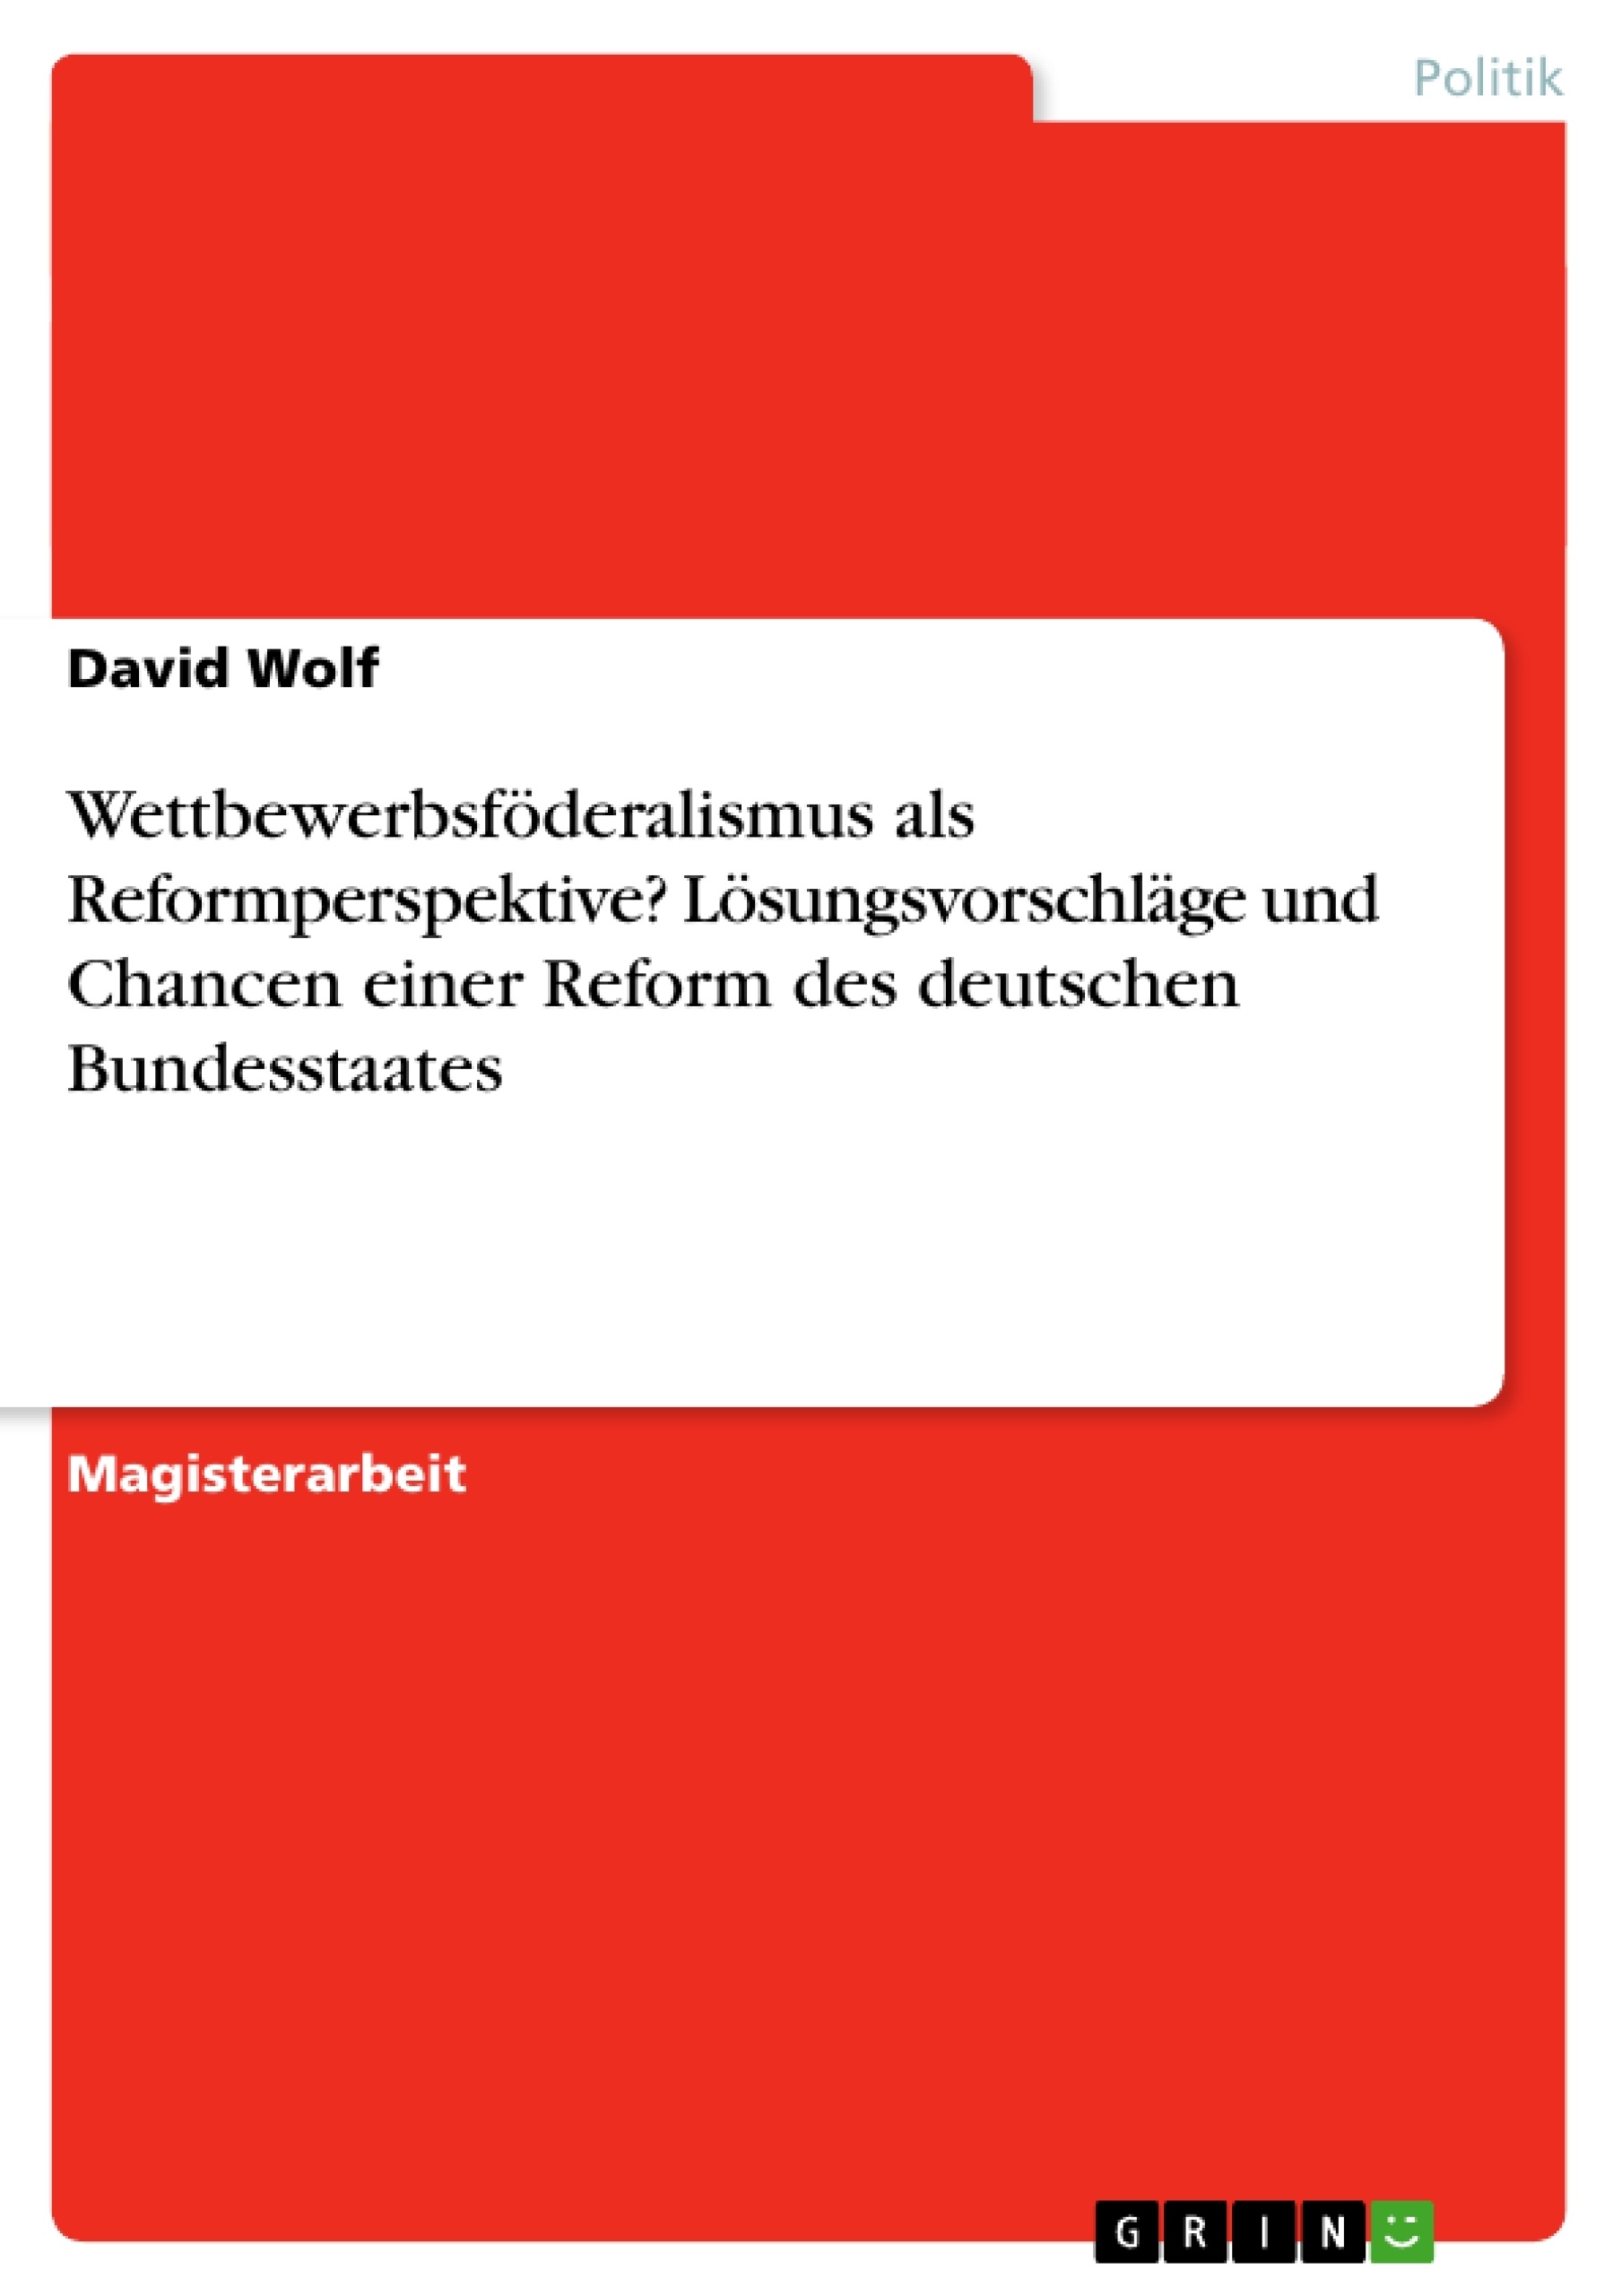 Título: Wettbewerbsföderalismus als Reformperspektive? Lösungsvorschläge und Chancen einer Reform des deutschen Bundesstaates